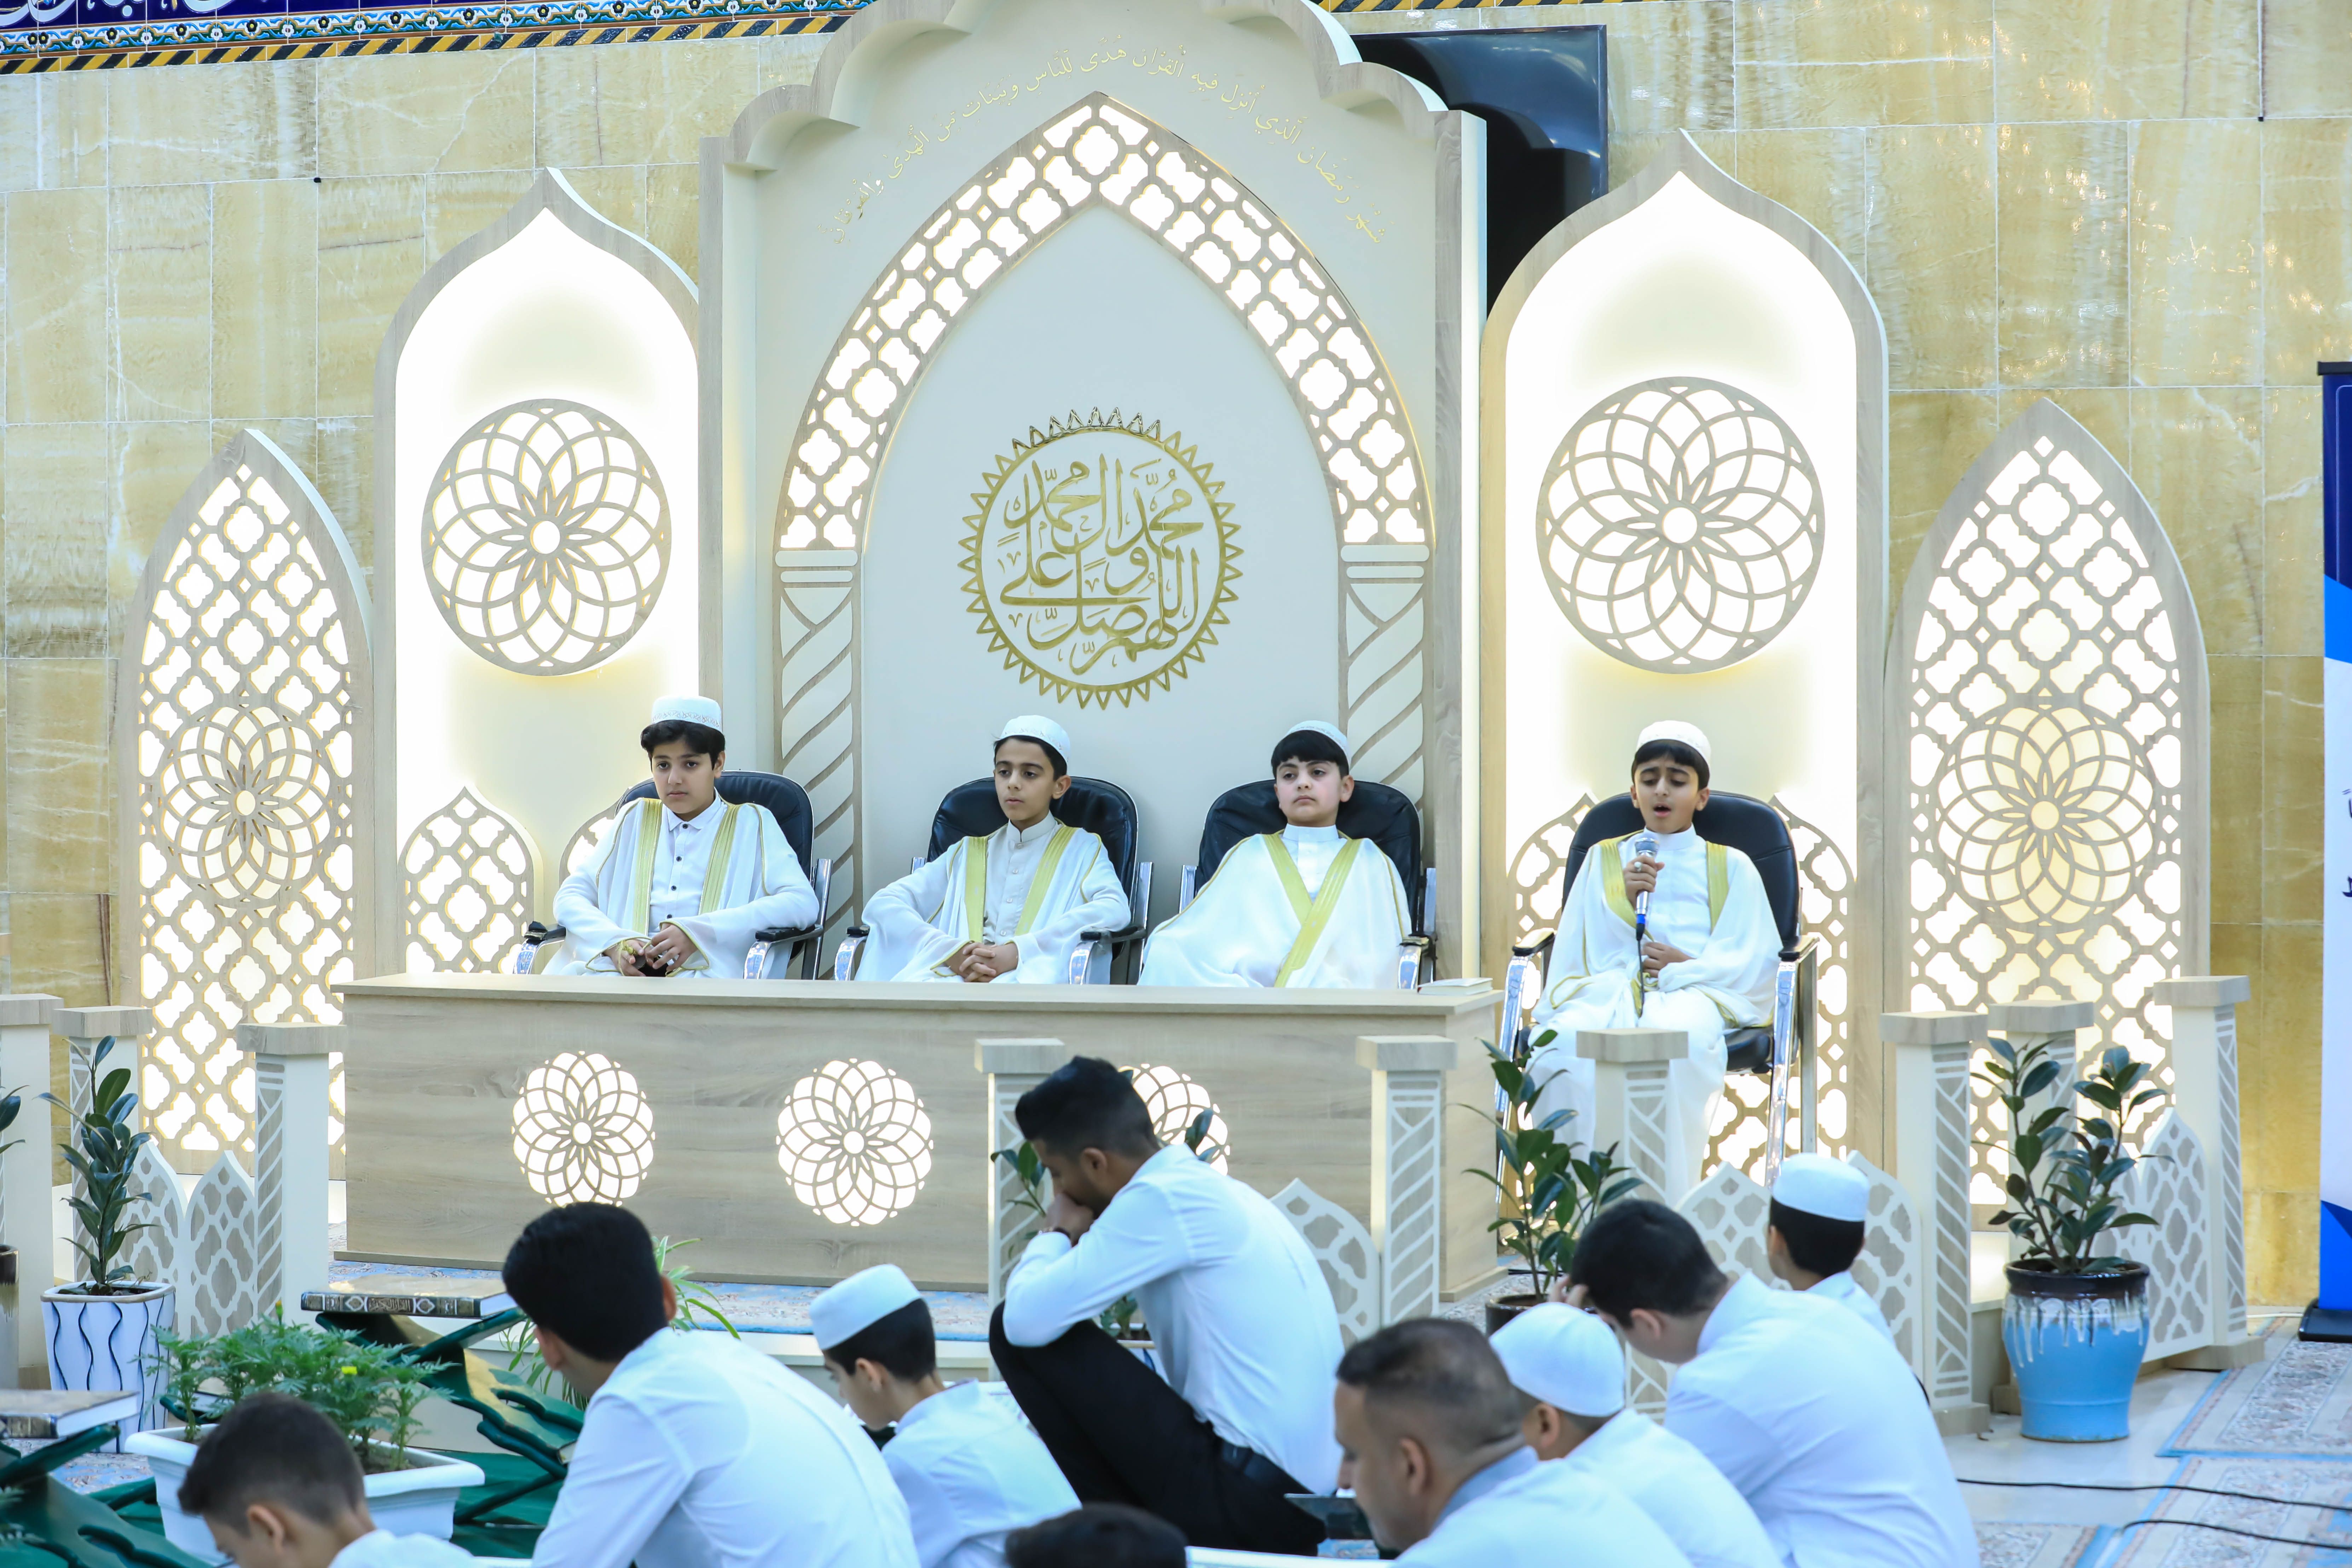 ختام فعاليات الختمة المرتلة حفظًا في مقام الإمام المنتظر (عج)